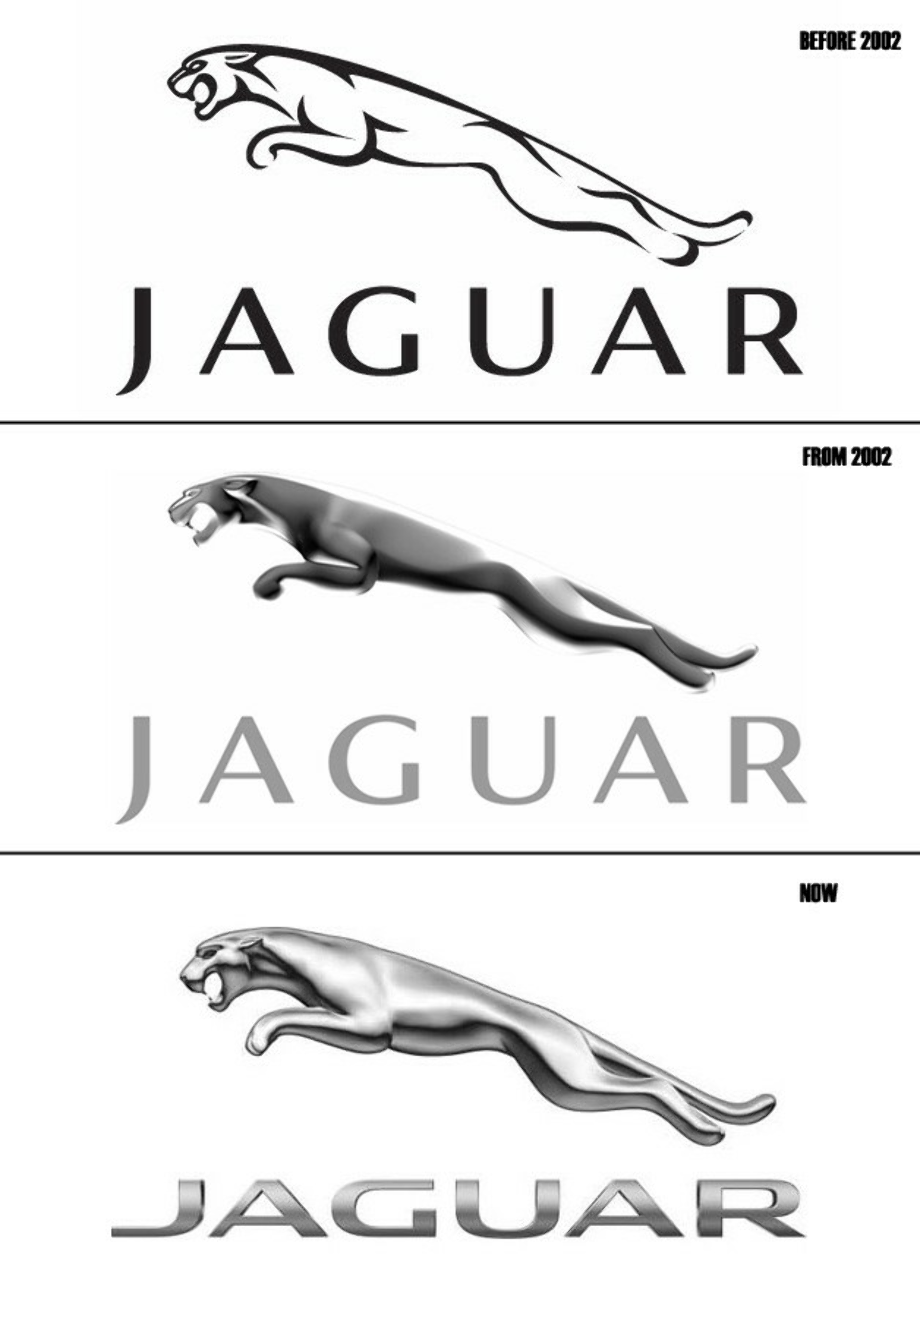 jaguar logo old